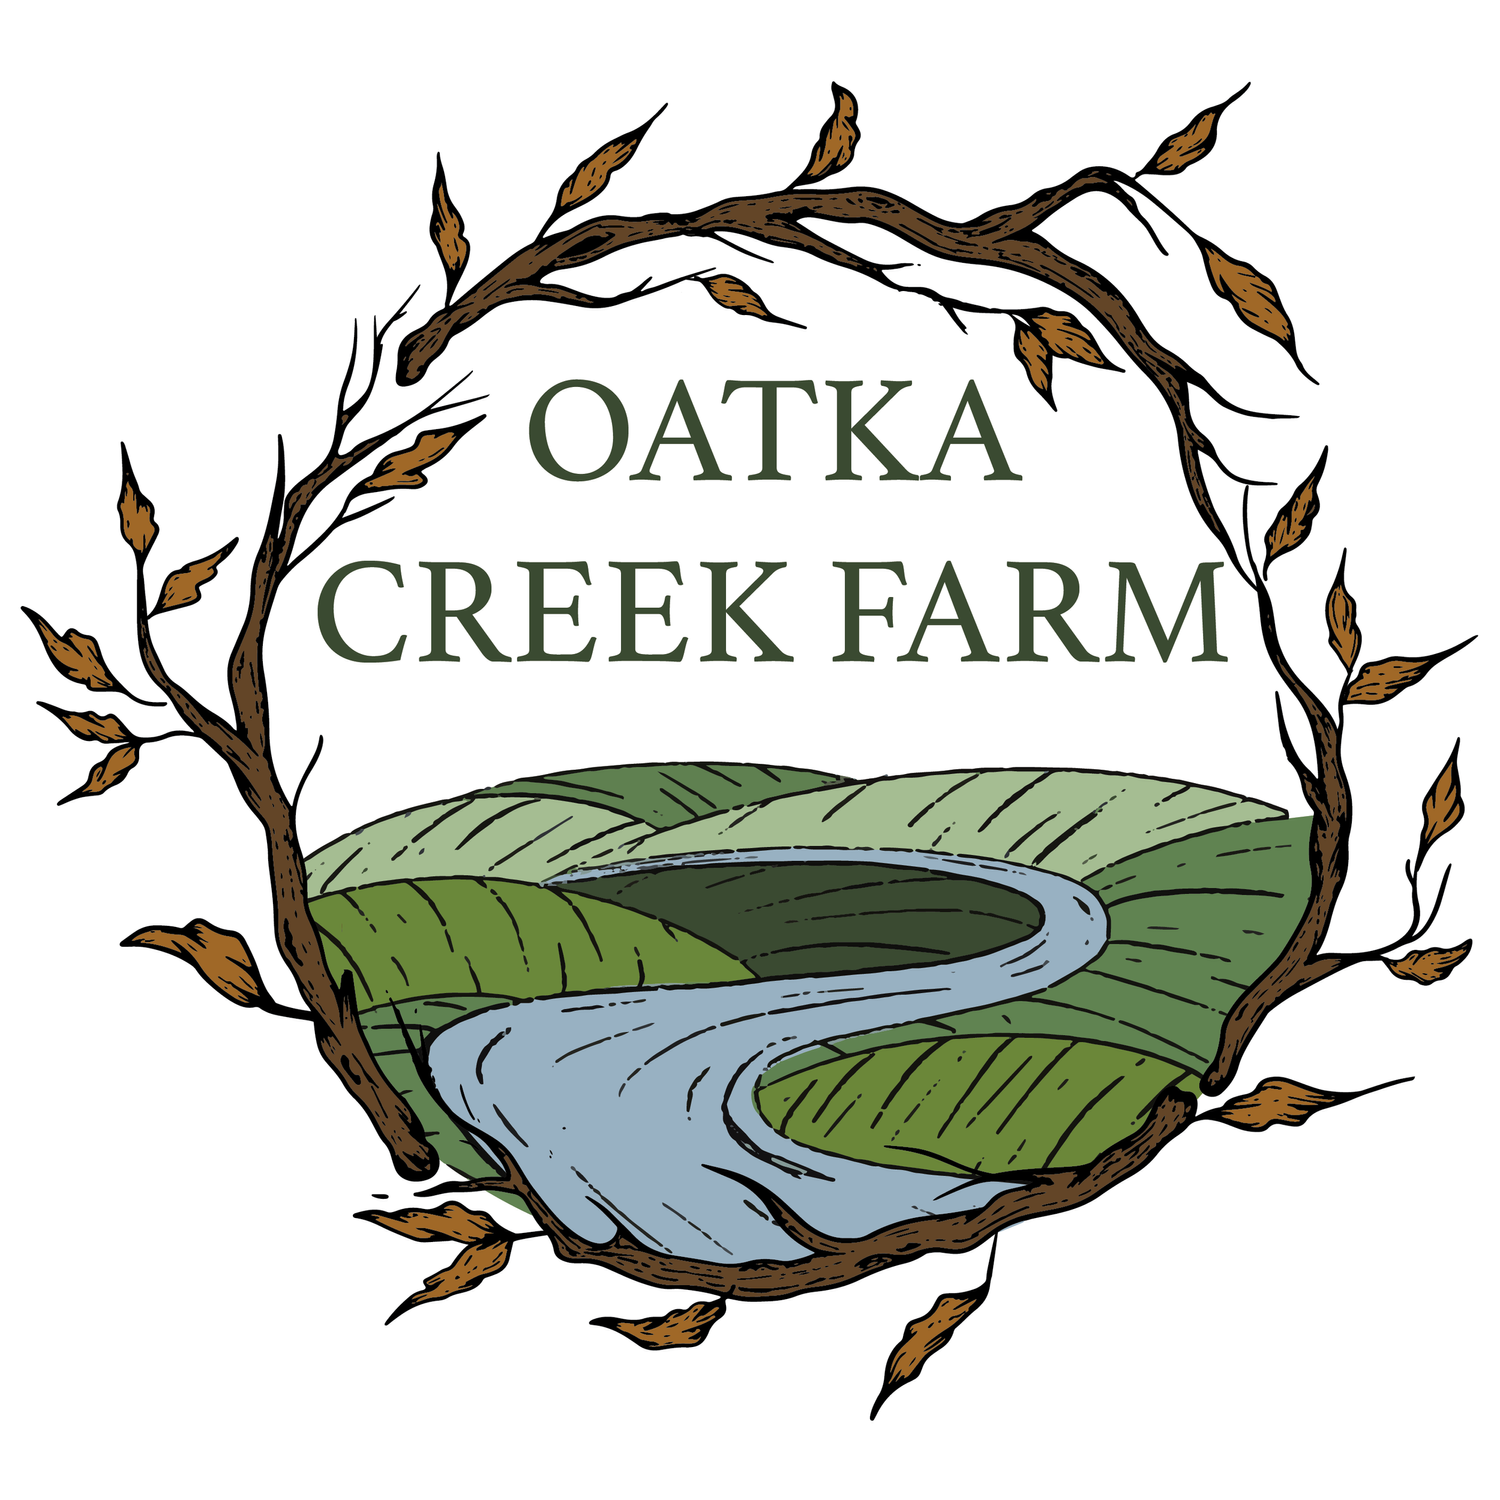 Oatka Creek Farm